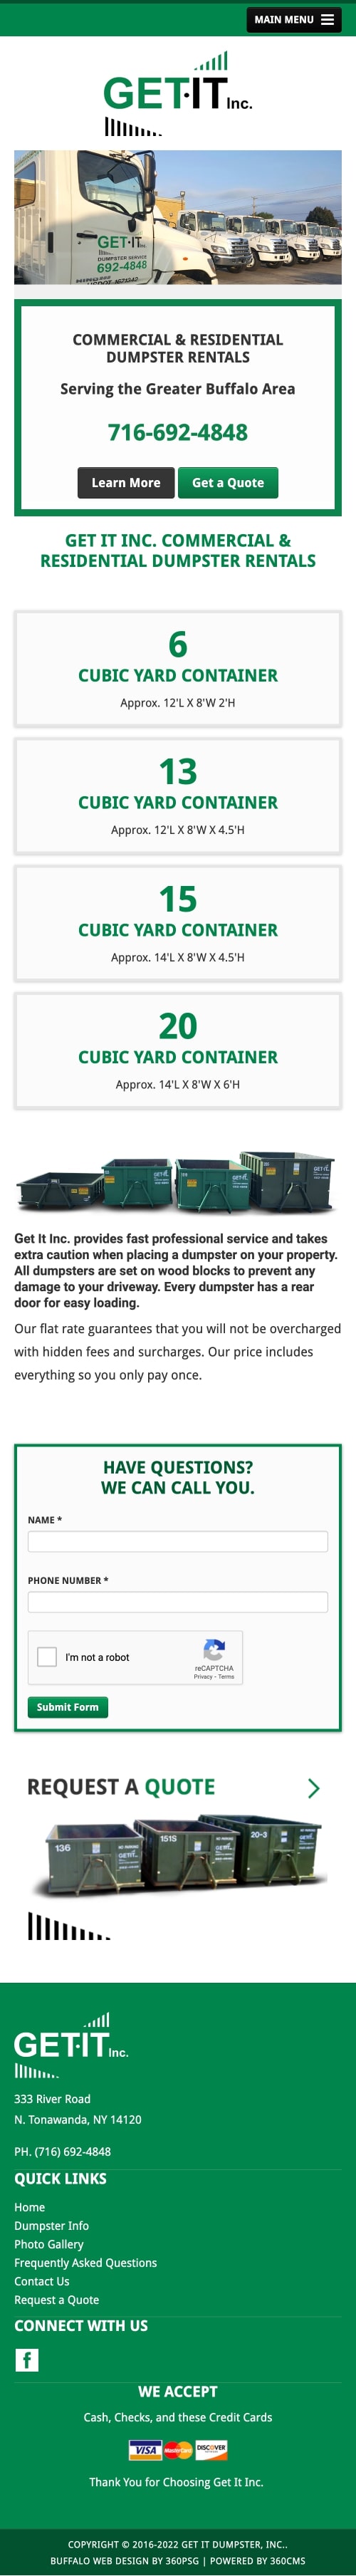 Get it Dumpster Service Website - Mobile